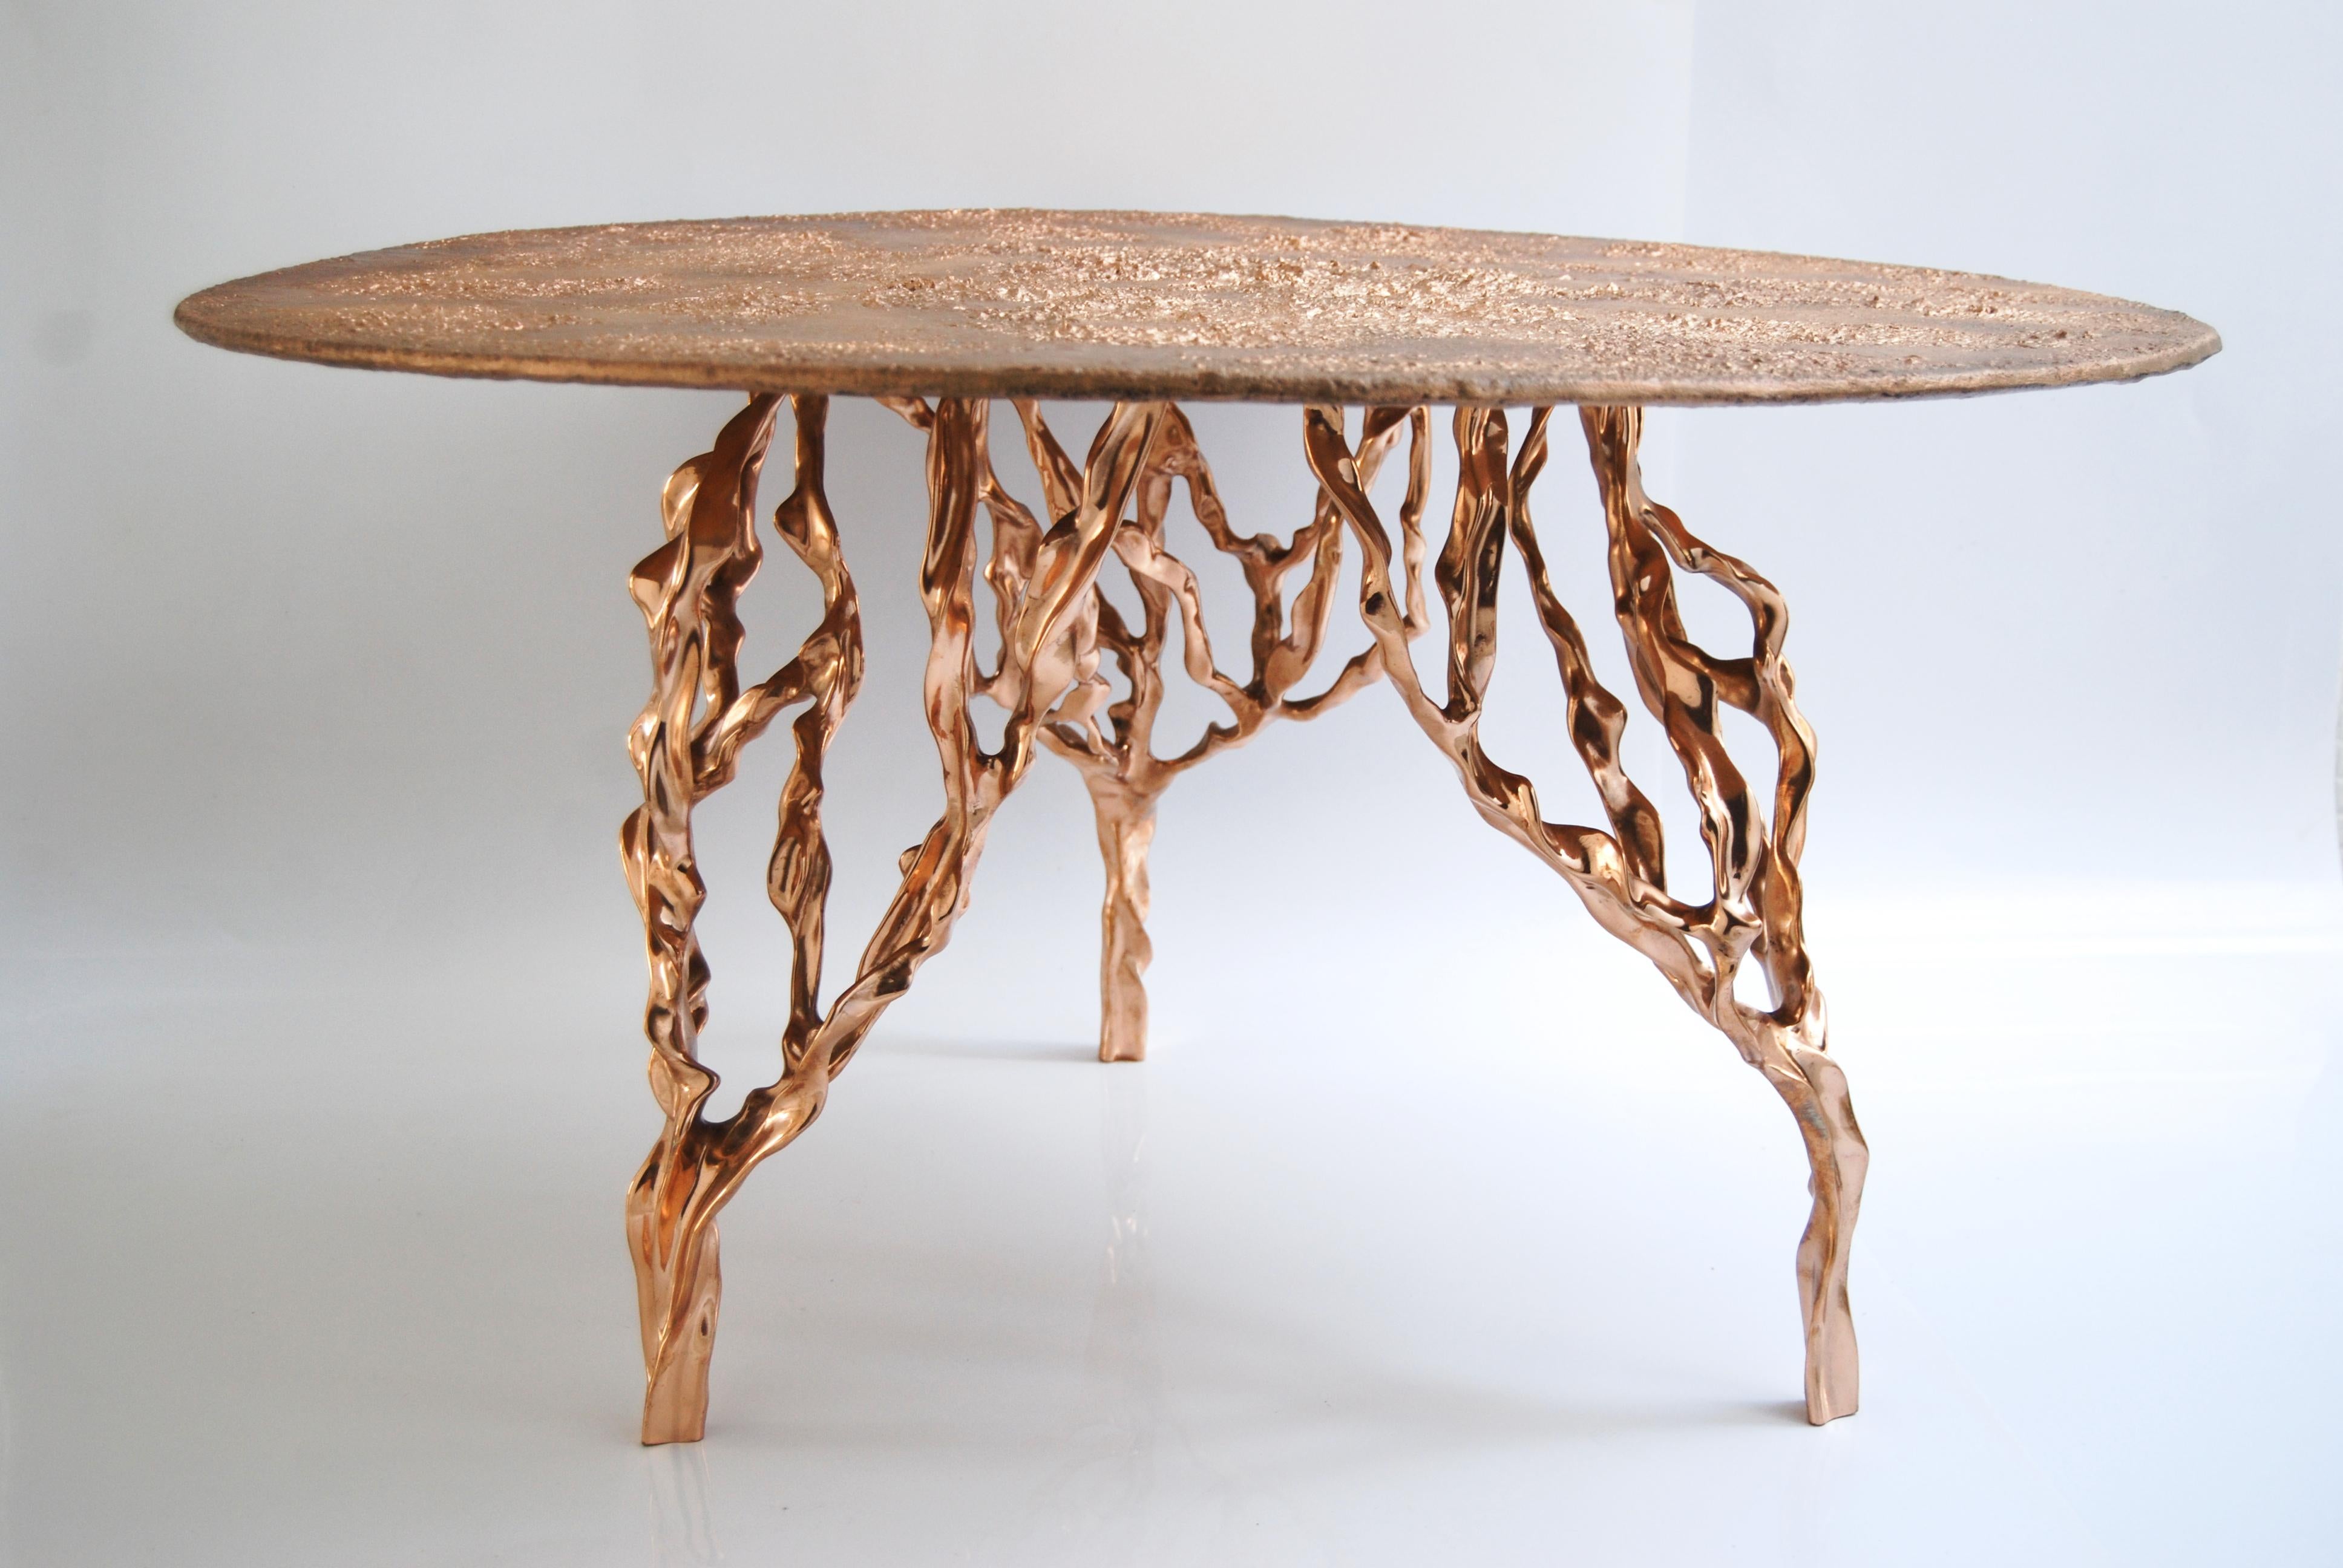 Tisch aus polierter Bronze von FAKASAKA Design
Abmessungen: B 84 x T 84 x H 46,5 cm
MATERIALIEN: Polierte Bronze.

 